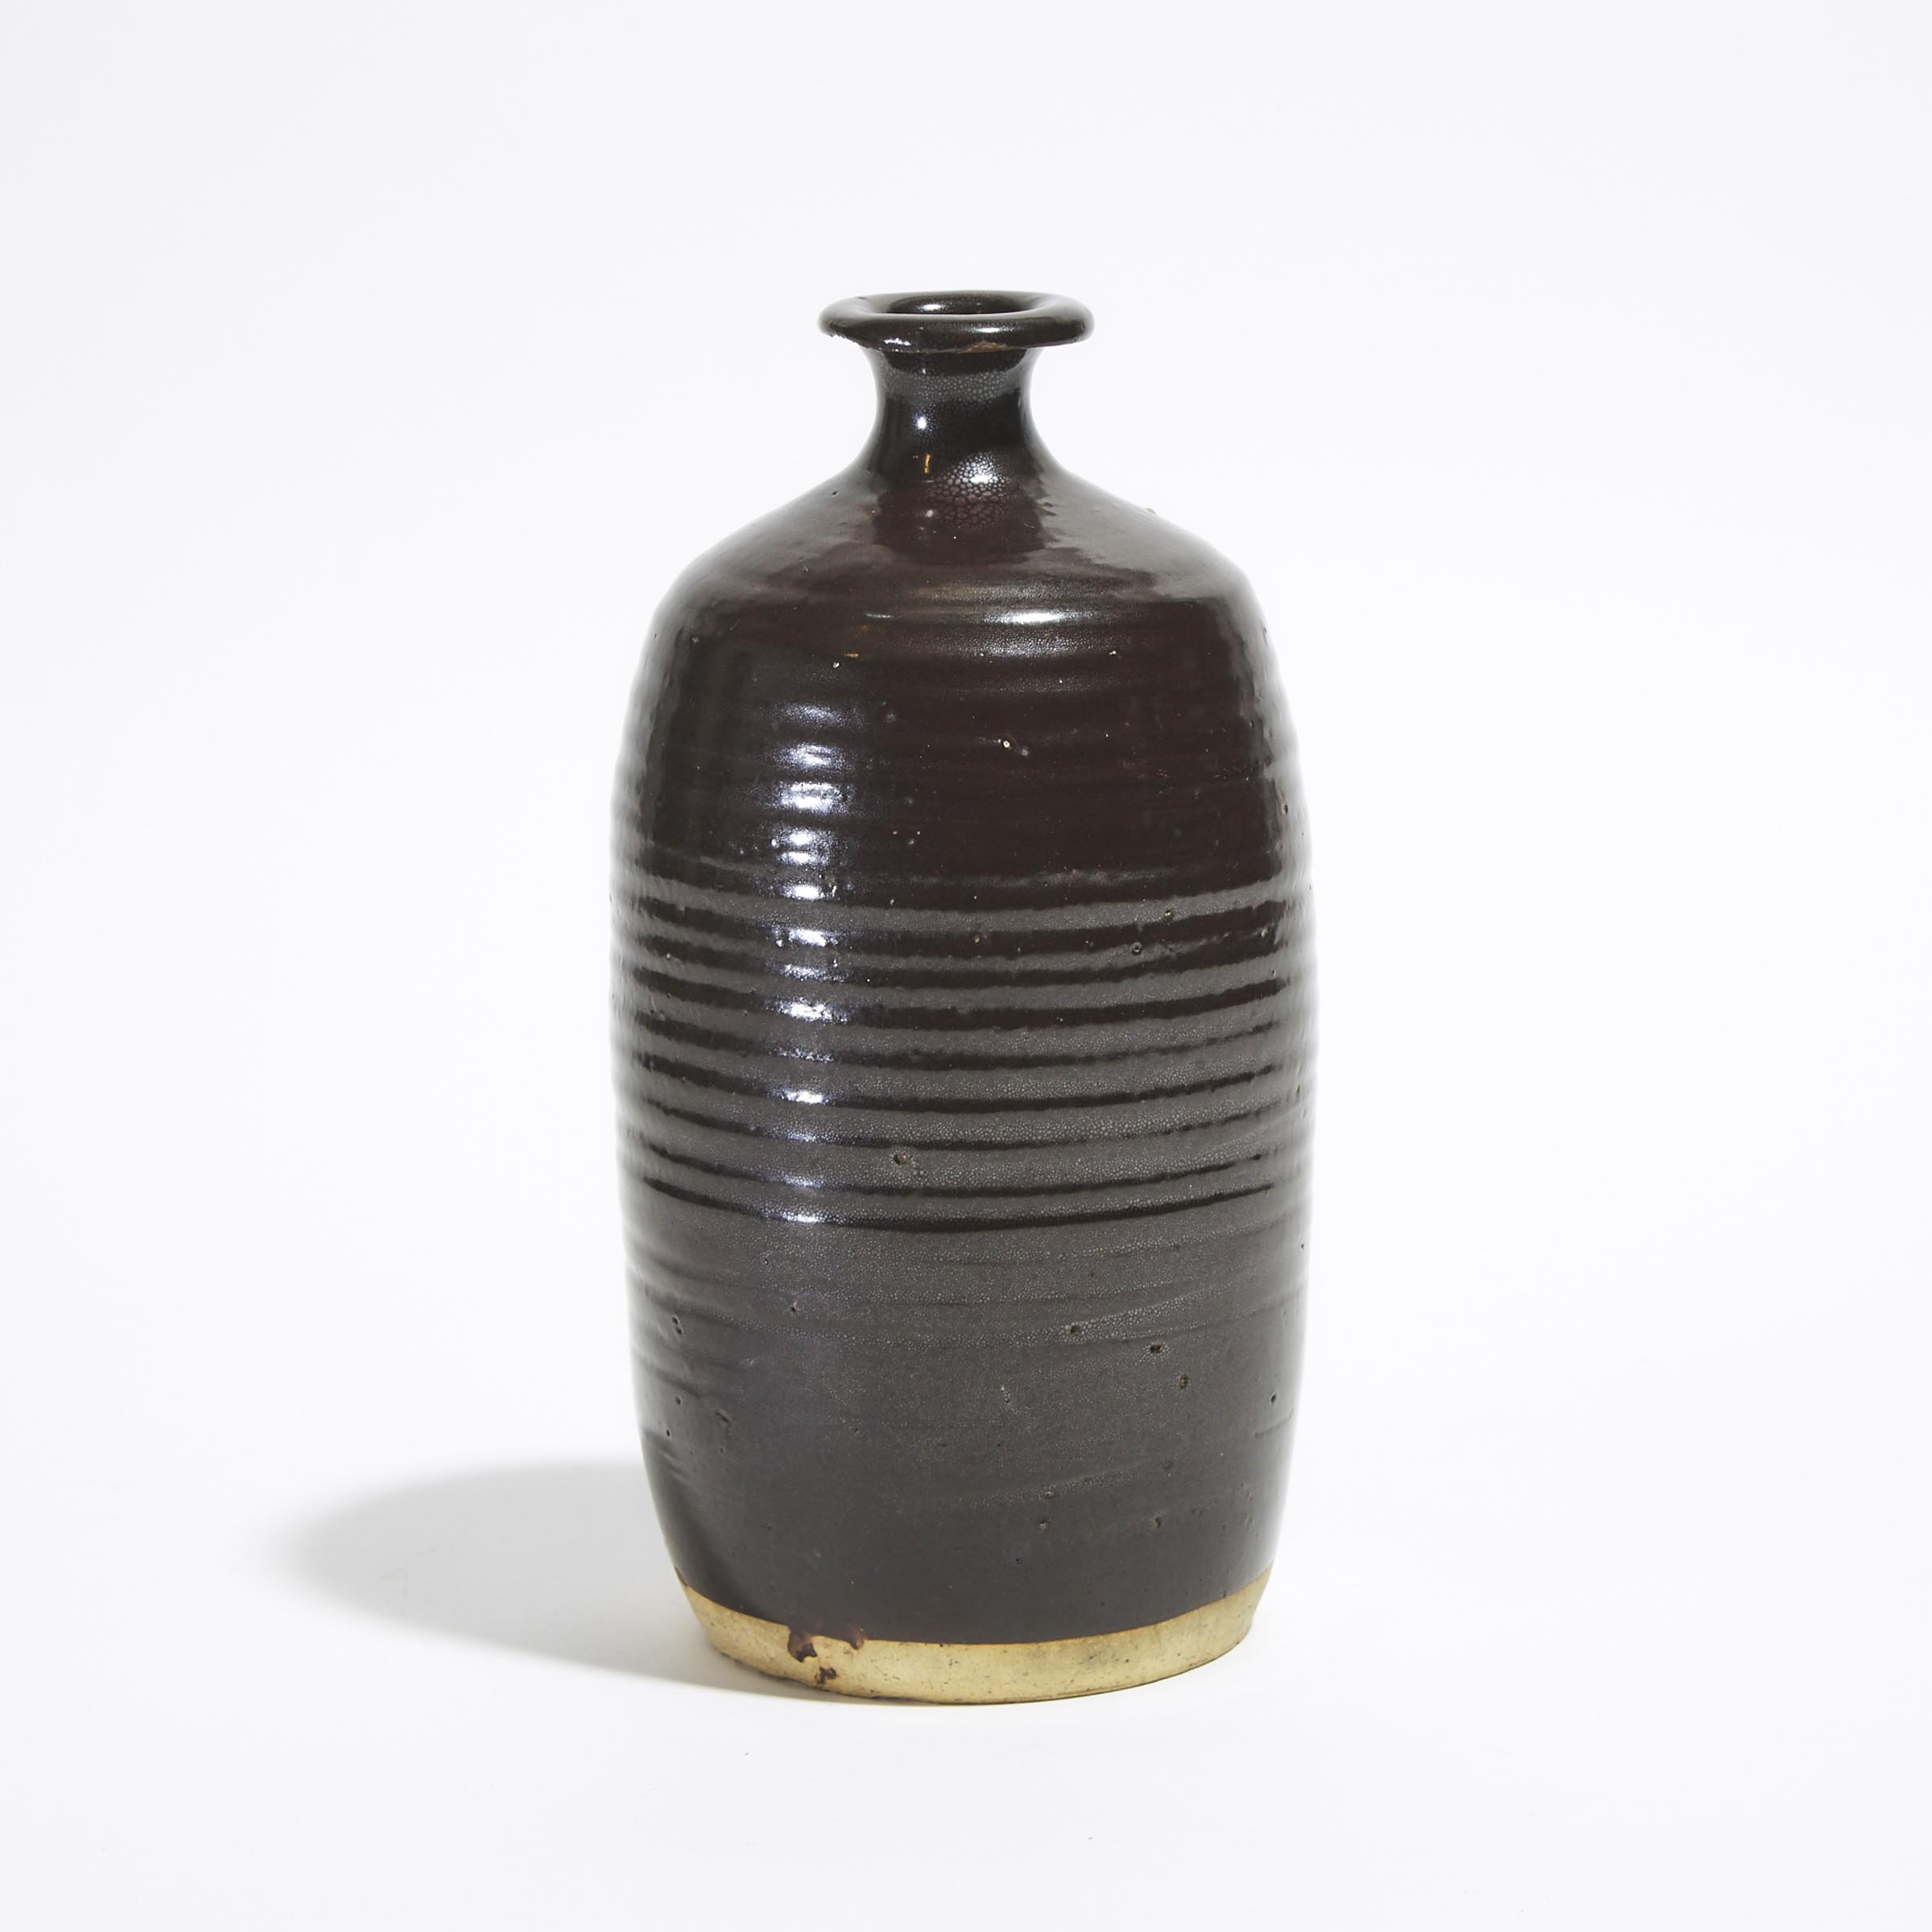 A Henan Black-Glazed Bottle Vase, Song Dynasty (AD 960-1279)